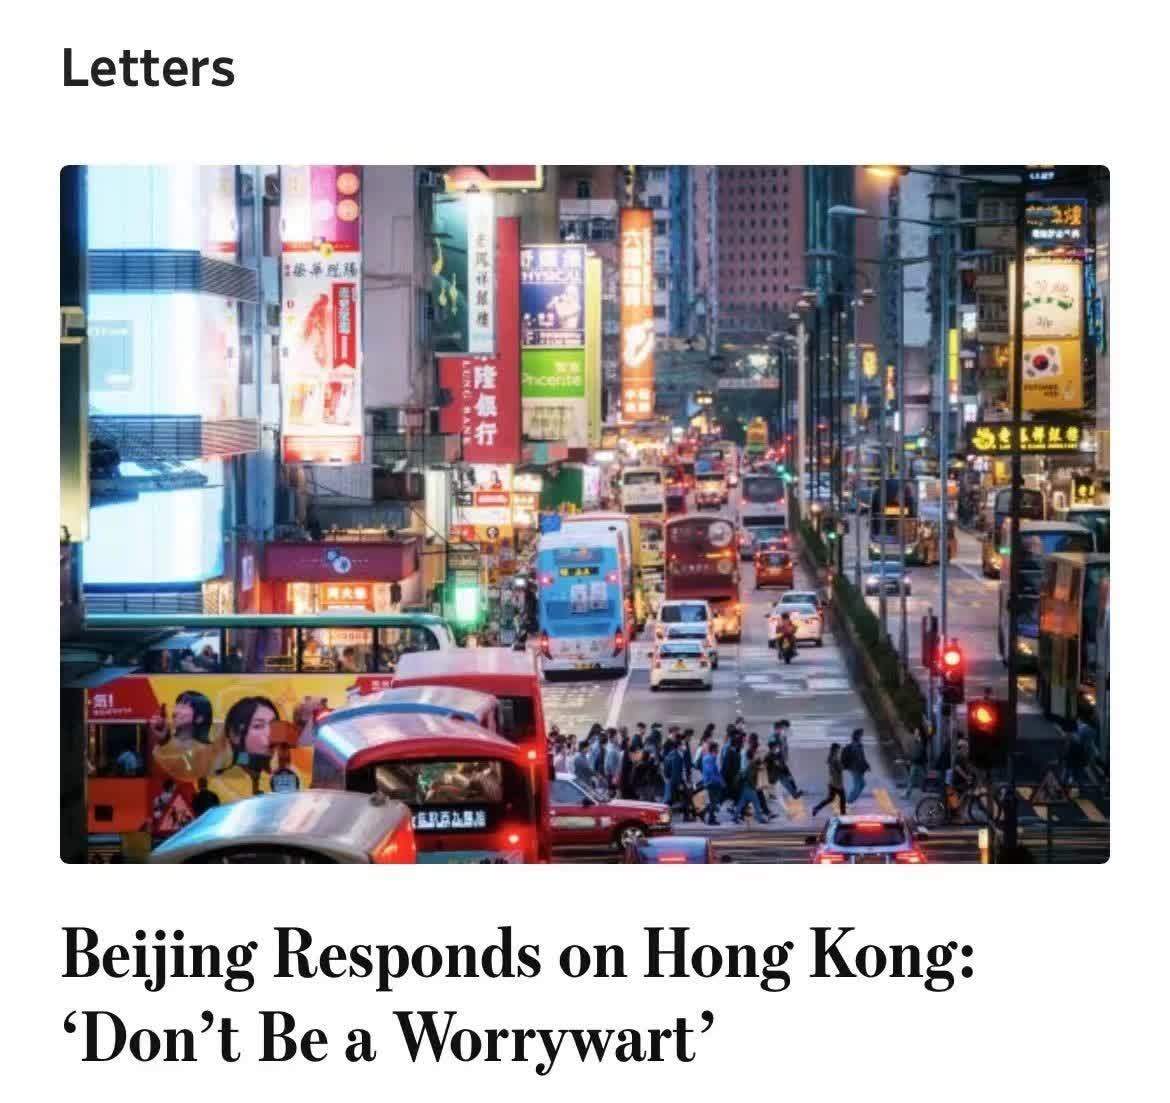 外交部驻香港特派员公署发言人在《华尔街日报》发文批驳涉港谬论